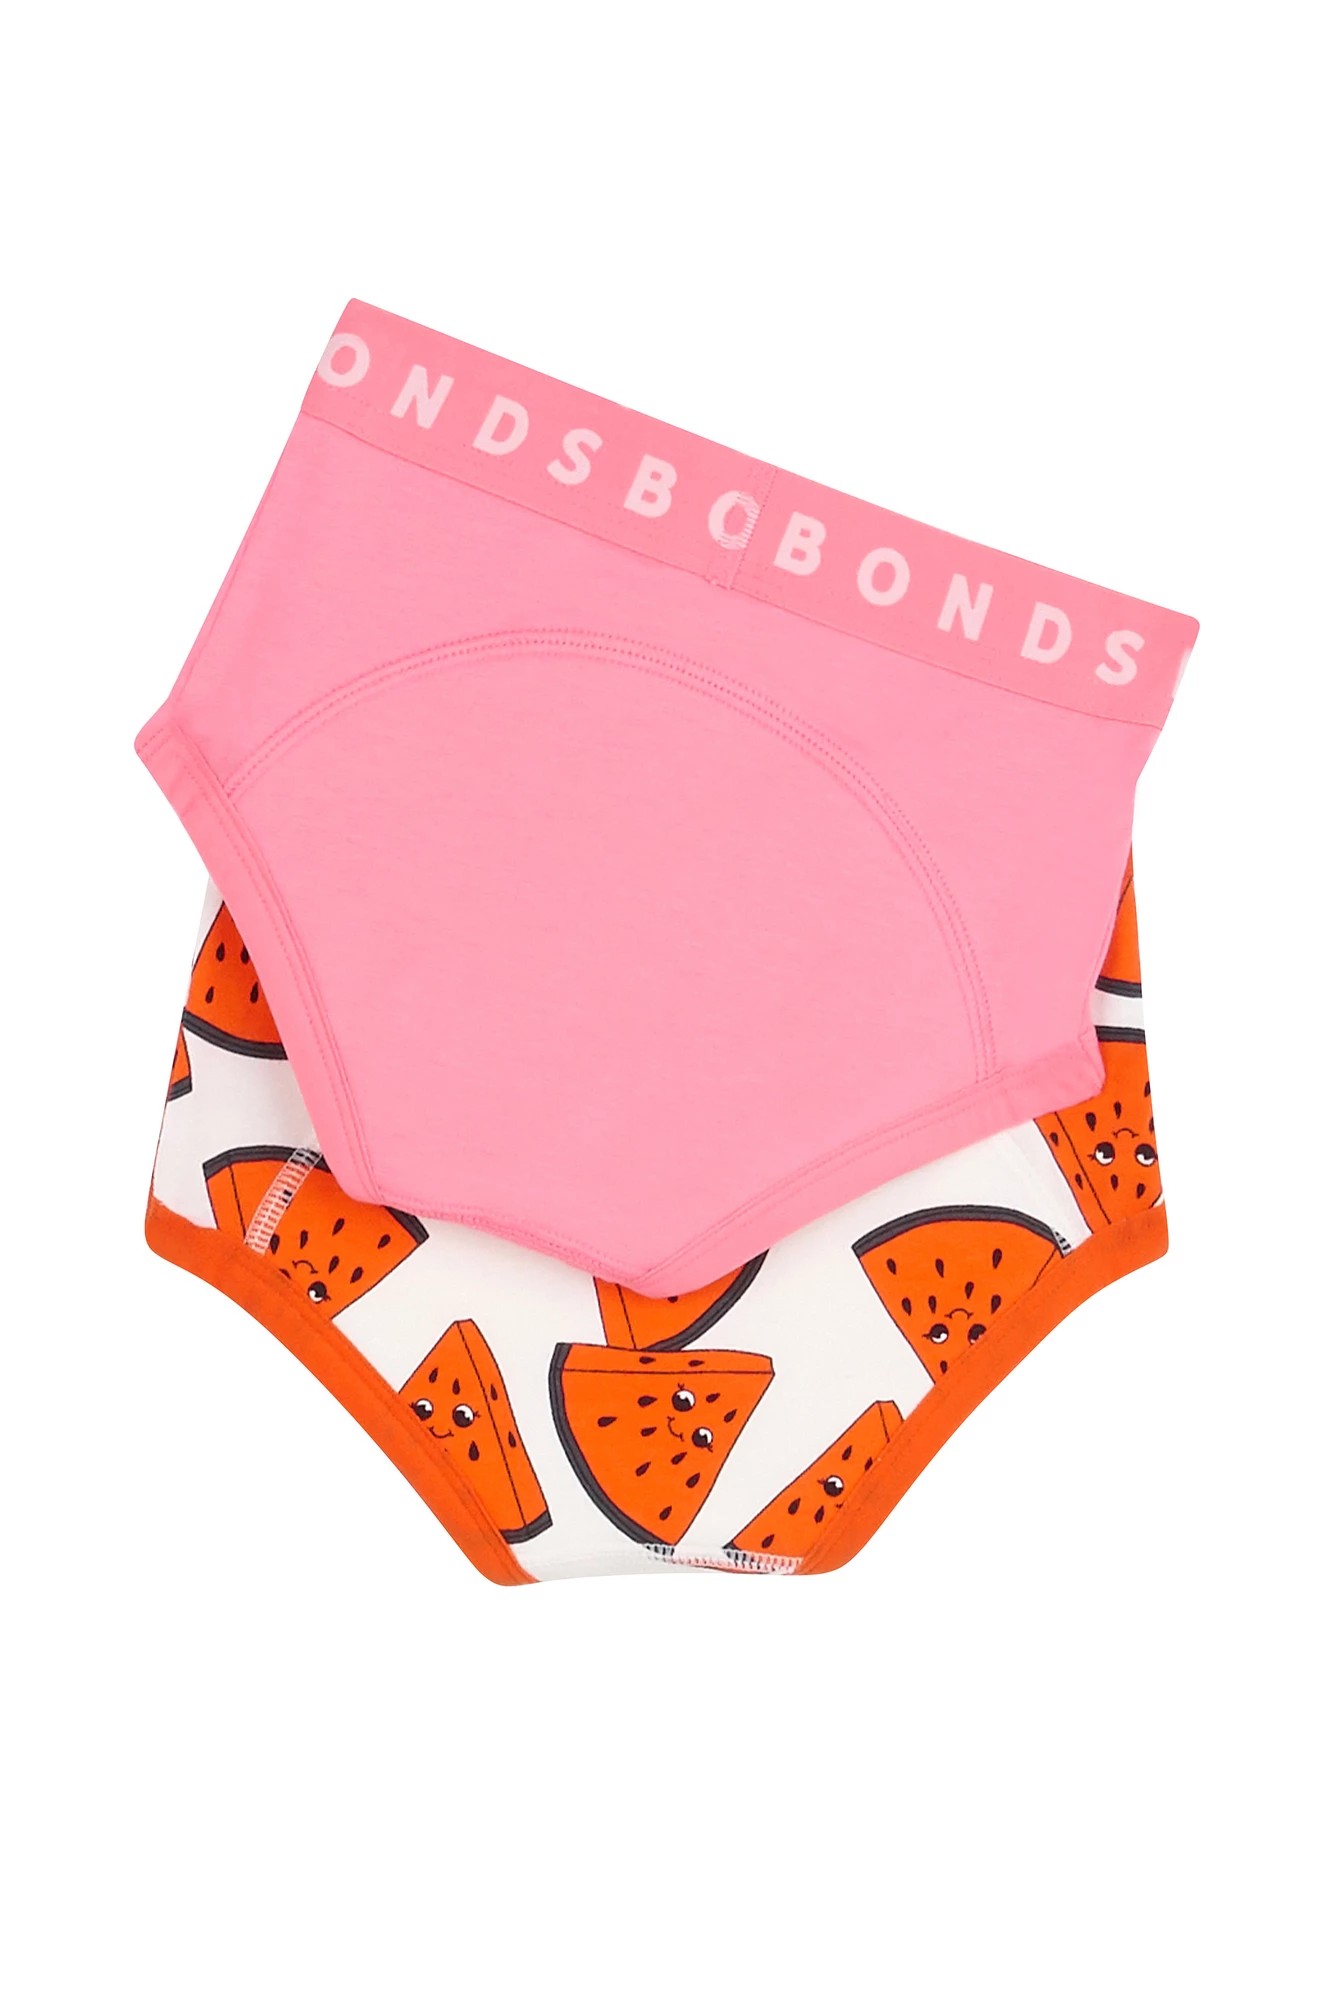 Bonds Girls Whoopsies Toilet Training Undies 2 Pack - Pink